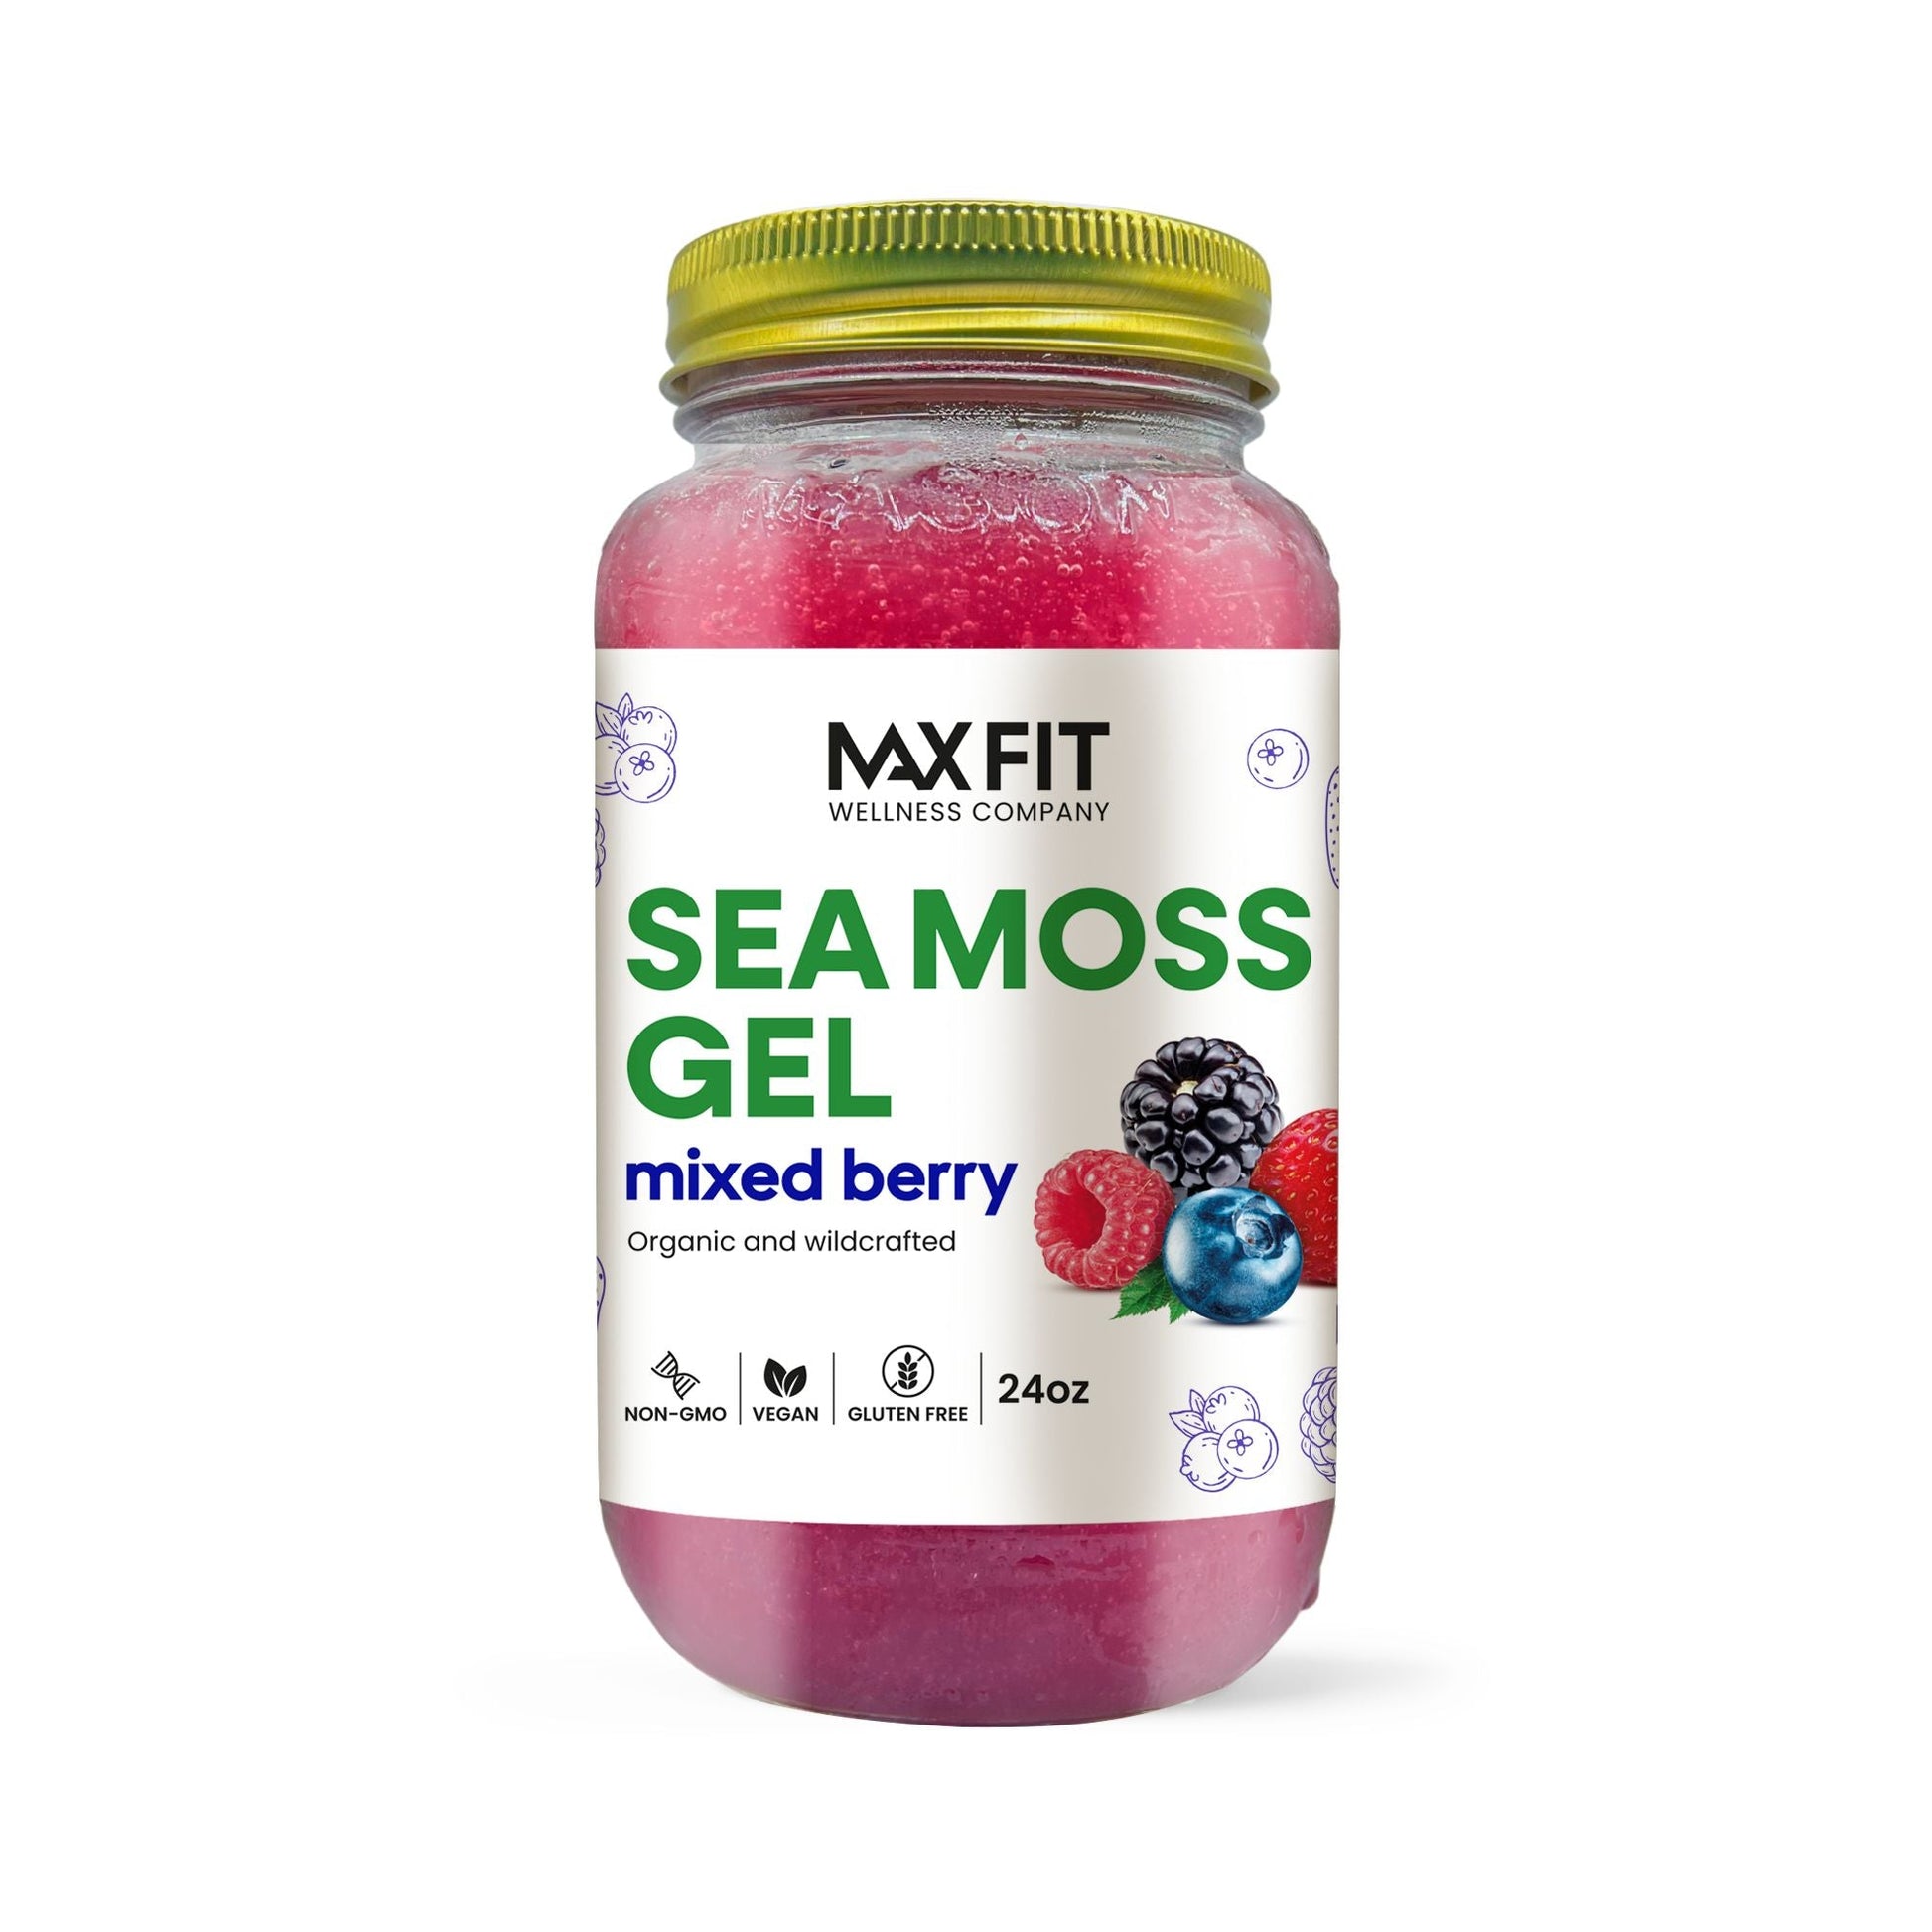 Mixed Berry Sea Moss Gel 24oz - 1800SEAMOSS.com